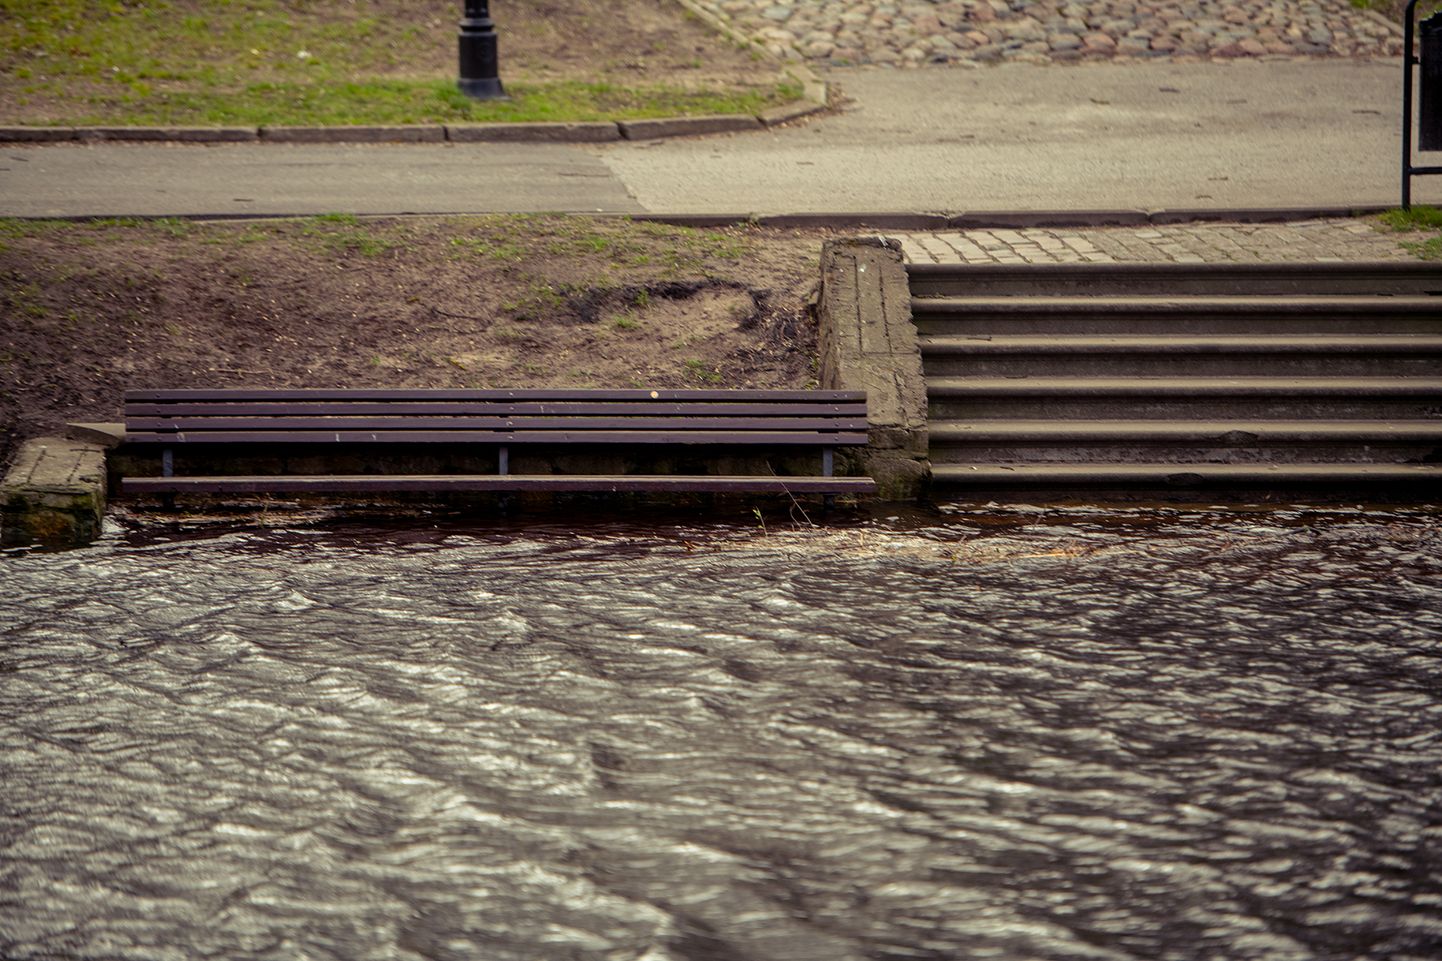 Vētras dēļ vietām pārplūdis Rīgas kanāls